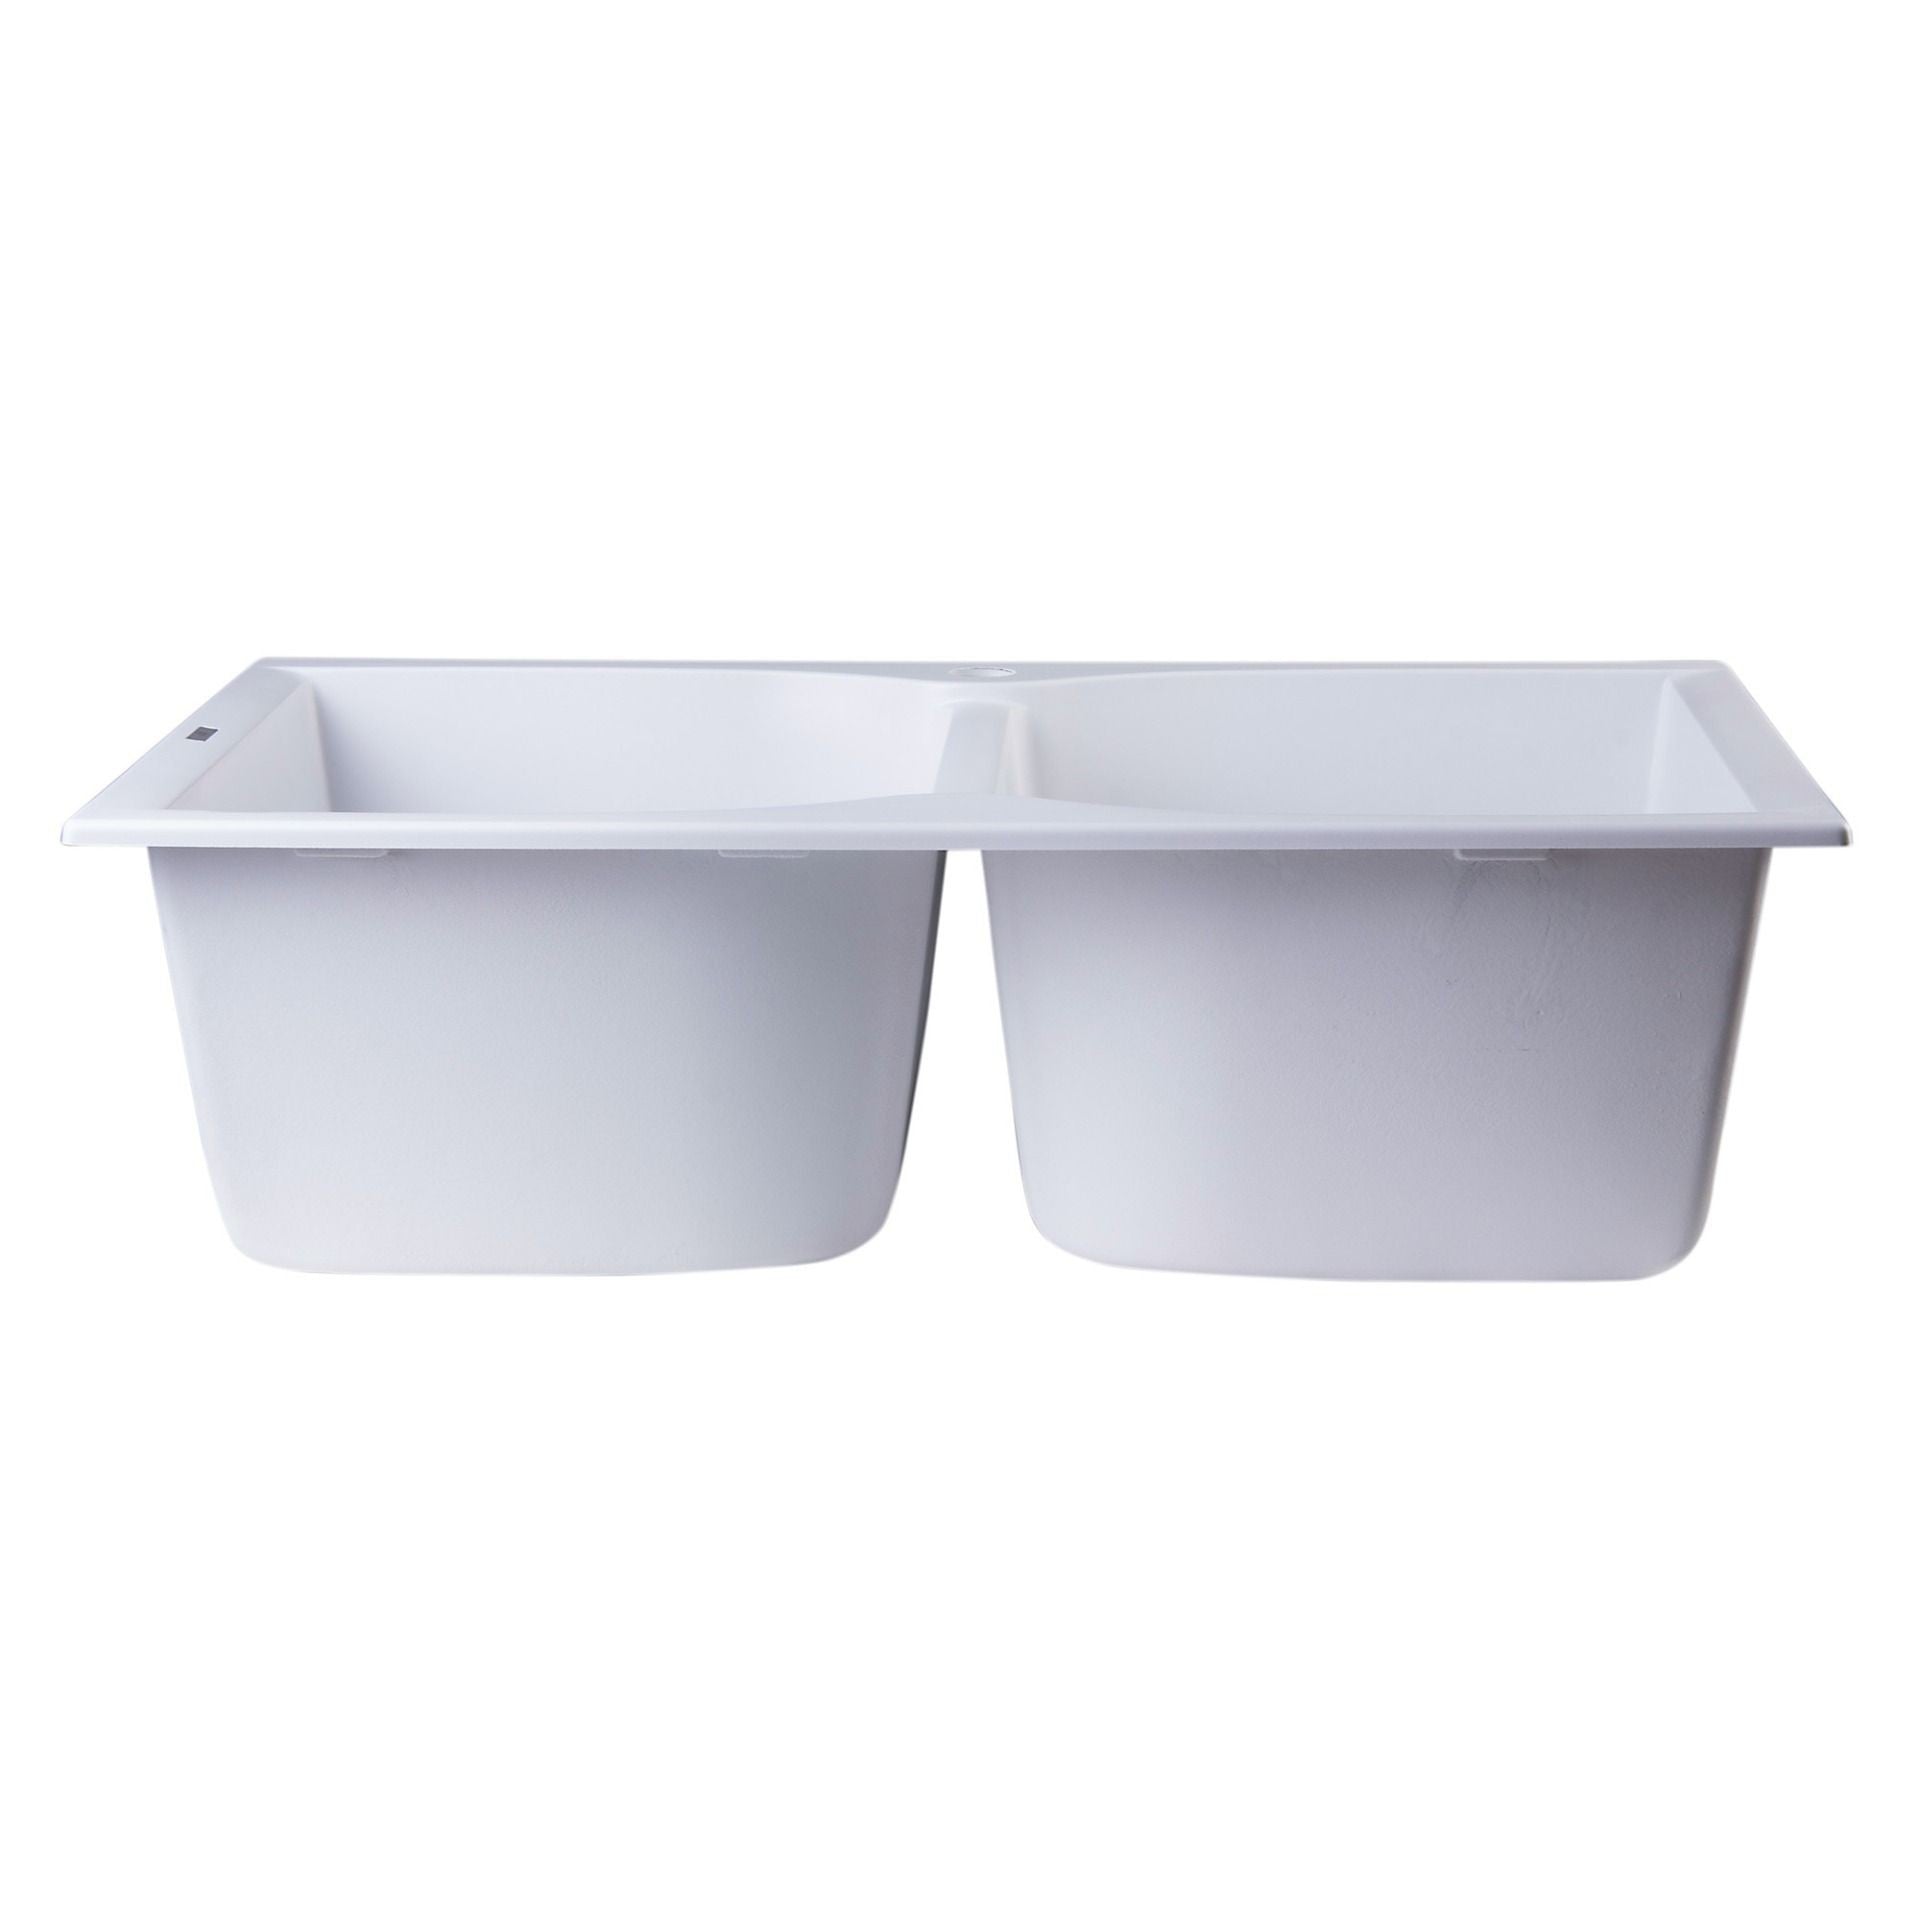 ALFI Brand AB3220DI-W White 32" Drop-In Double Bowl Granite Composite Kitchen Sink